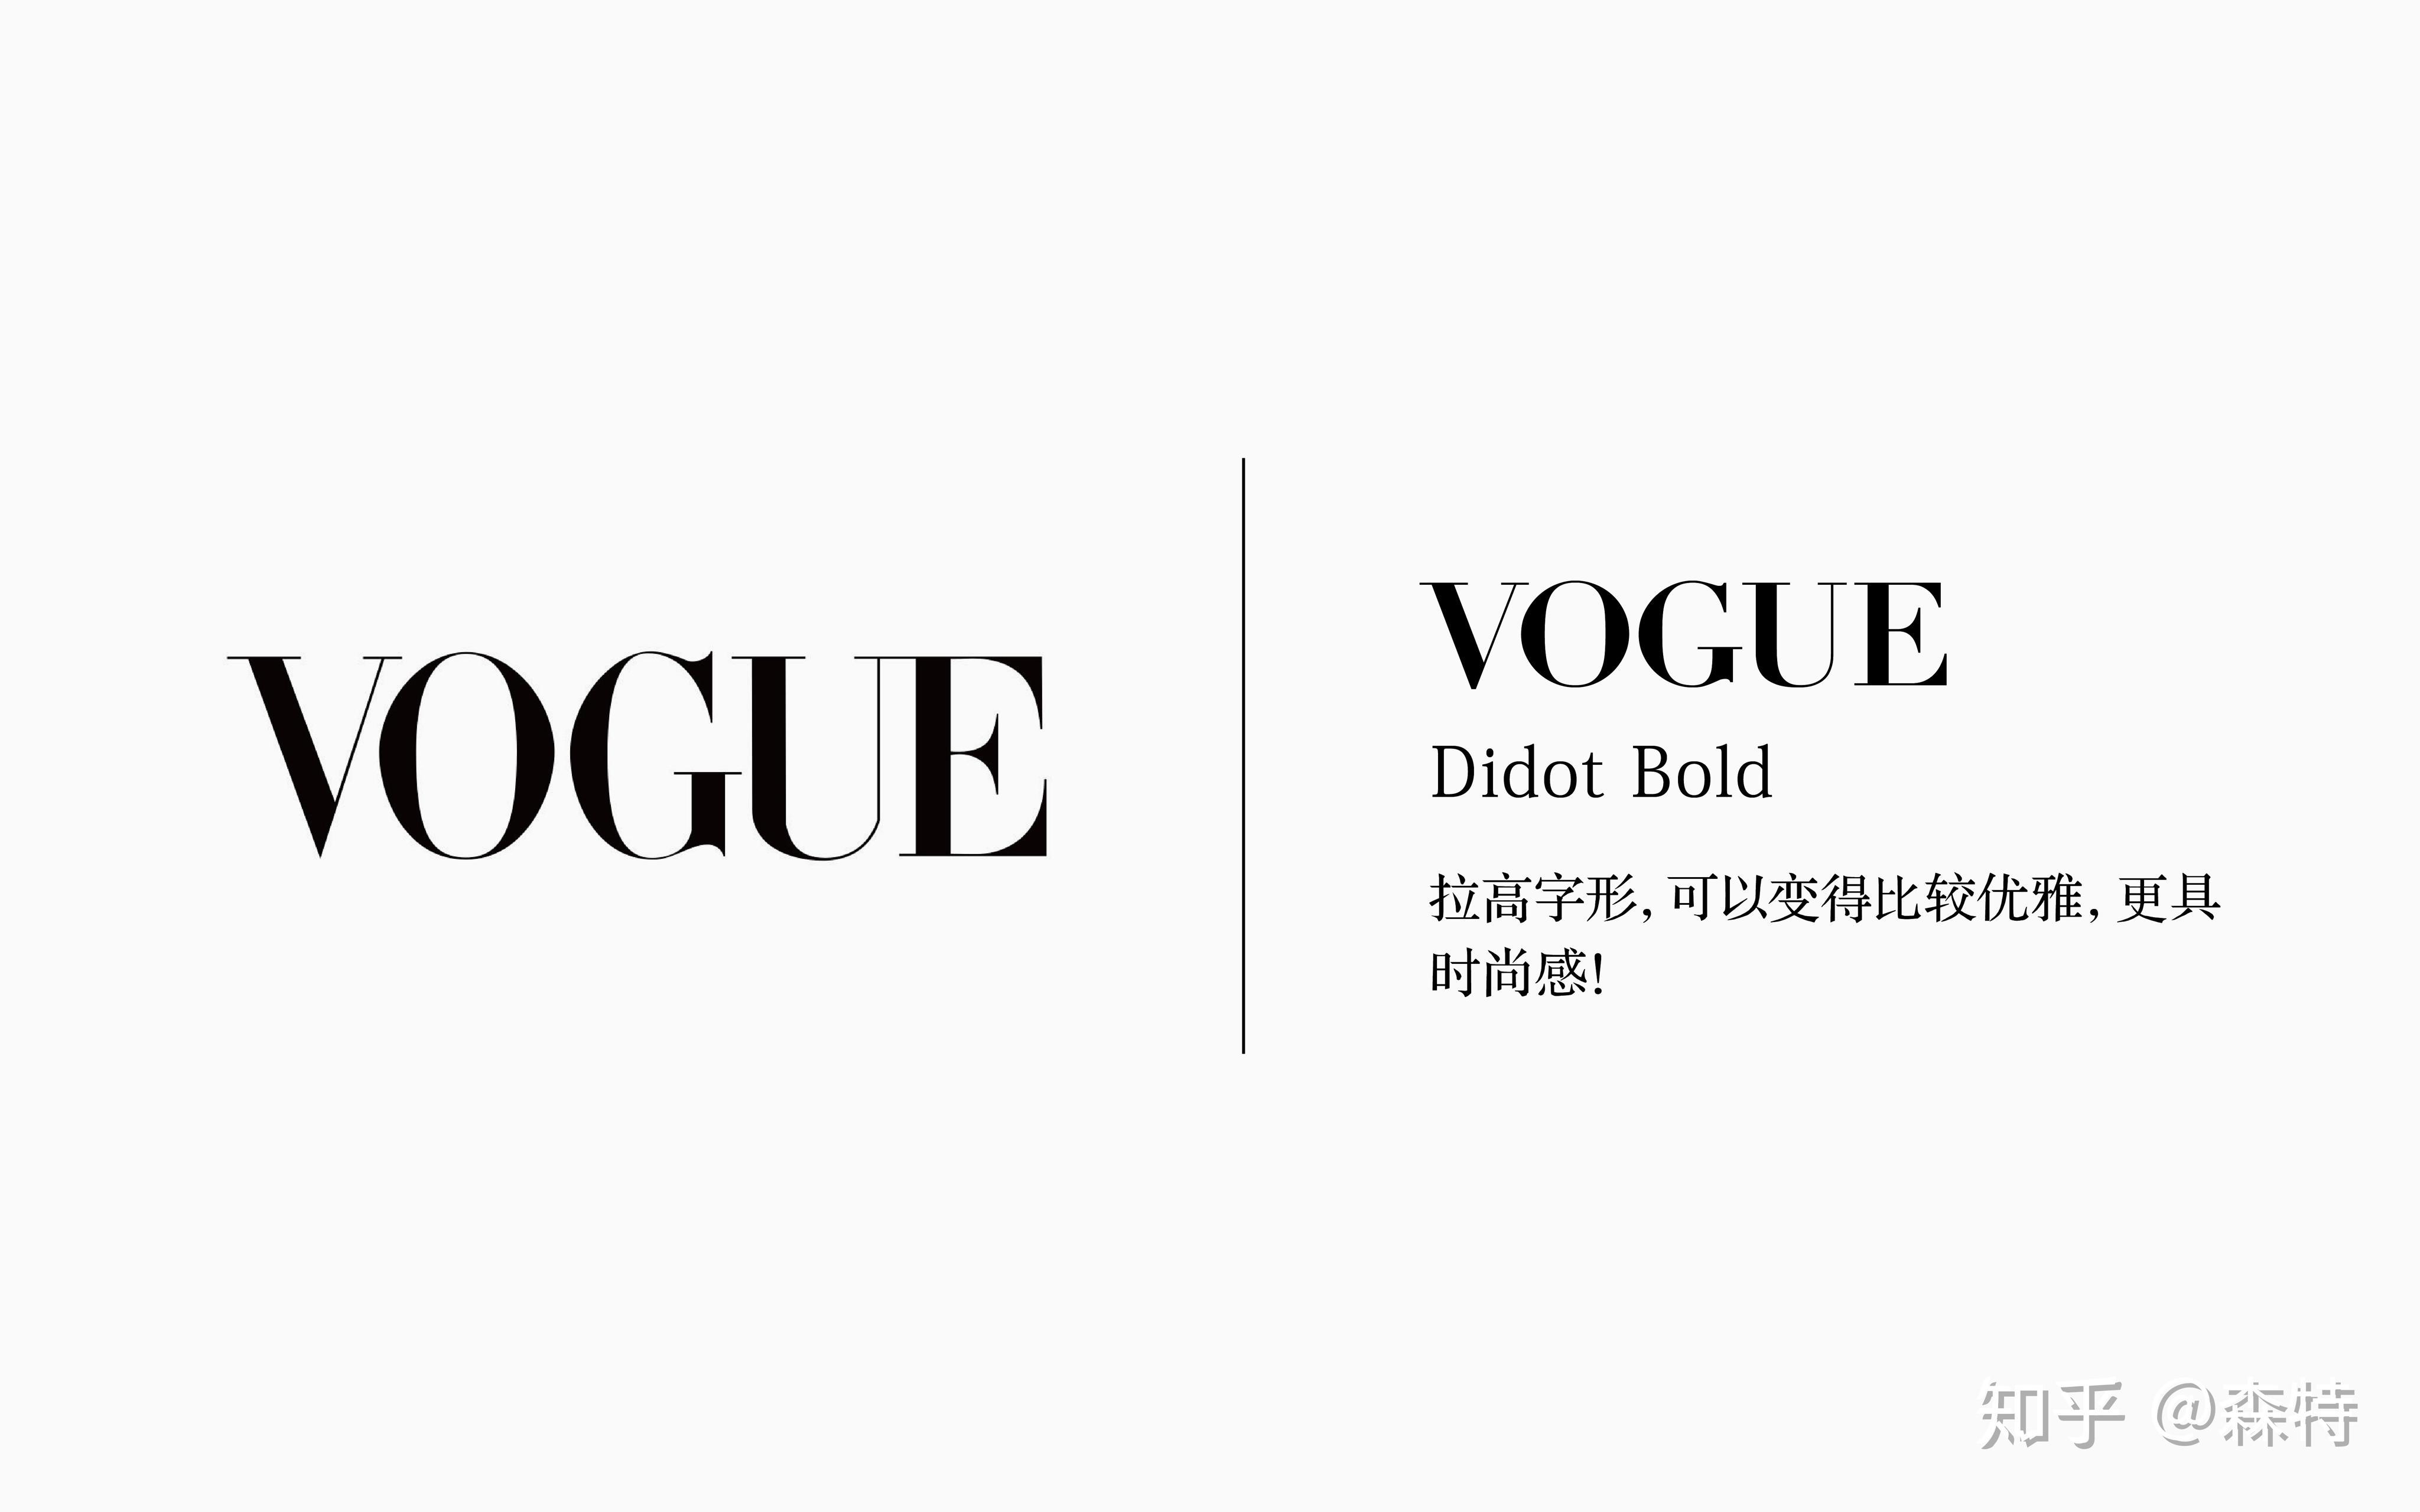 奢侈品牌,其他的例如时尚杂志中,逼格最高的宇宙大刊vogue用的是didot